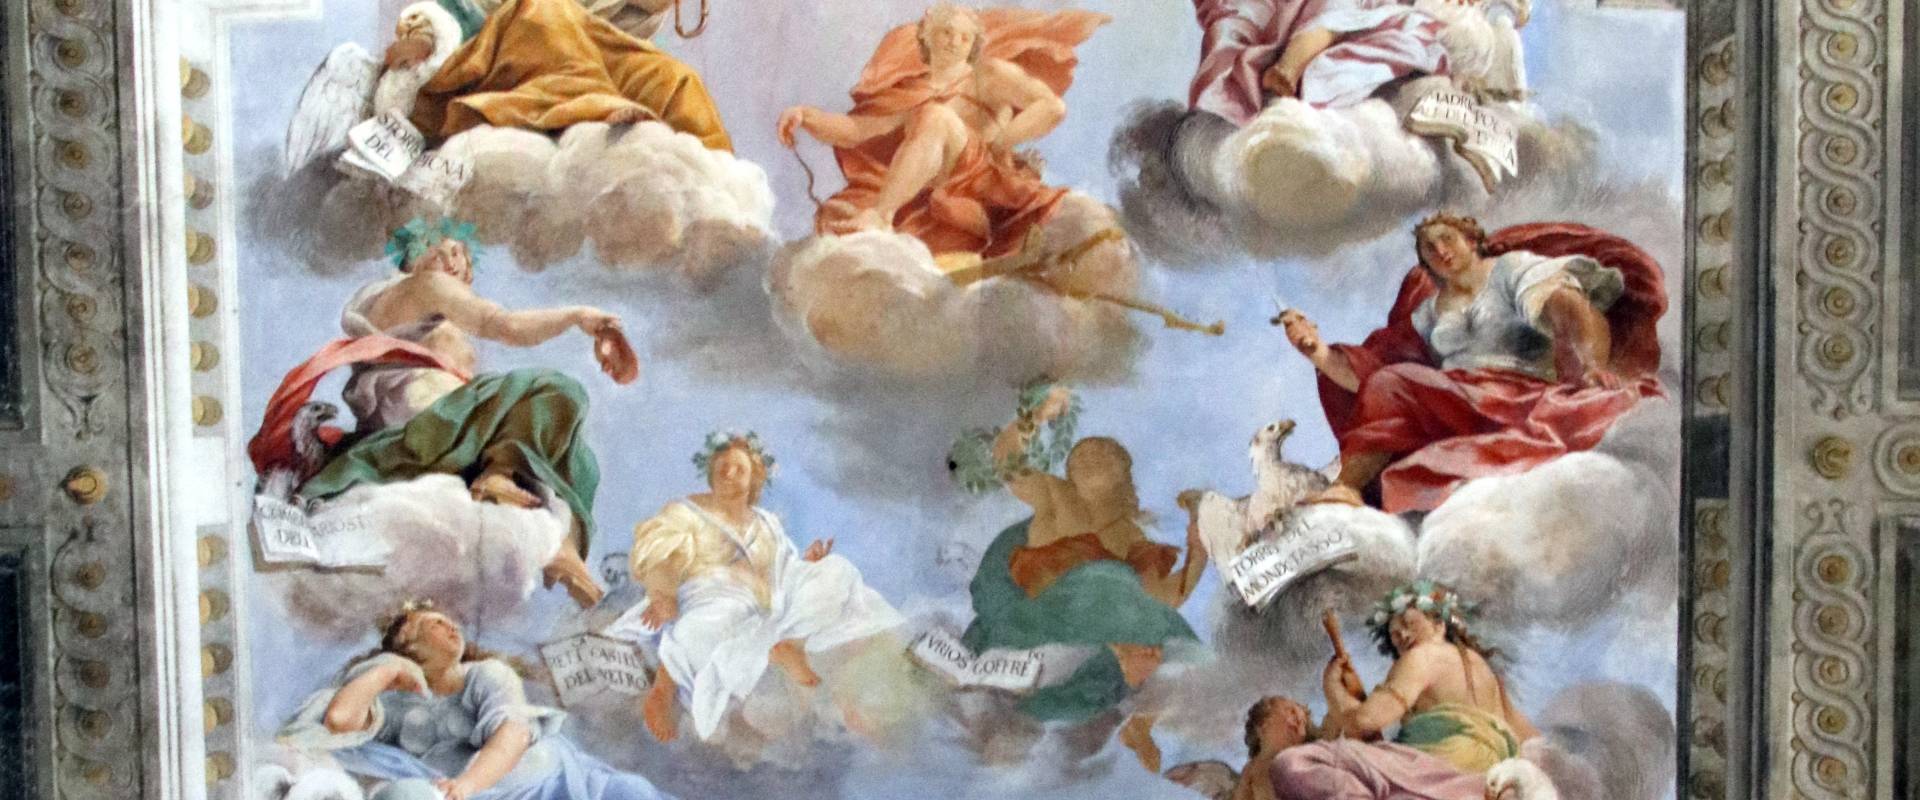 A.M. Colonna, A. Mitelli, B. Bianchi e G.G. Monti, Apollo al quale le Muse presentano opere letterarie promosse dalla Casa d'Este (1647-1648) 03 foto di Mongolo1984